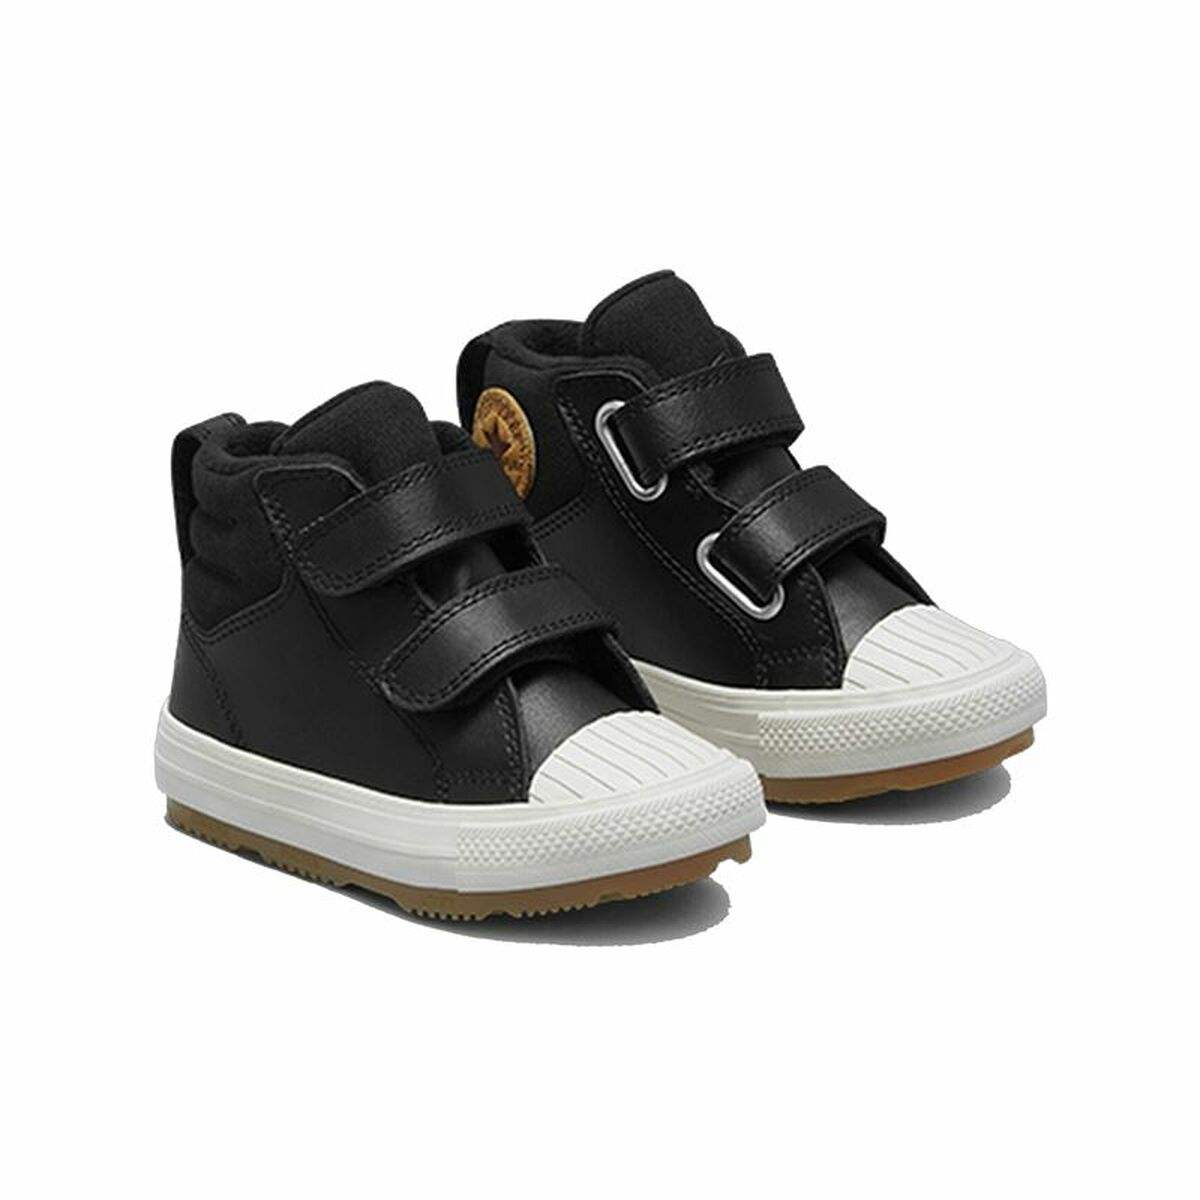 Chaussures de Sport pour Bébés Converse All-Star Berkshire 2V Noir - Converse - Jardin D'Eyden - jardindeyden.fr